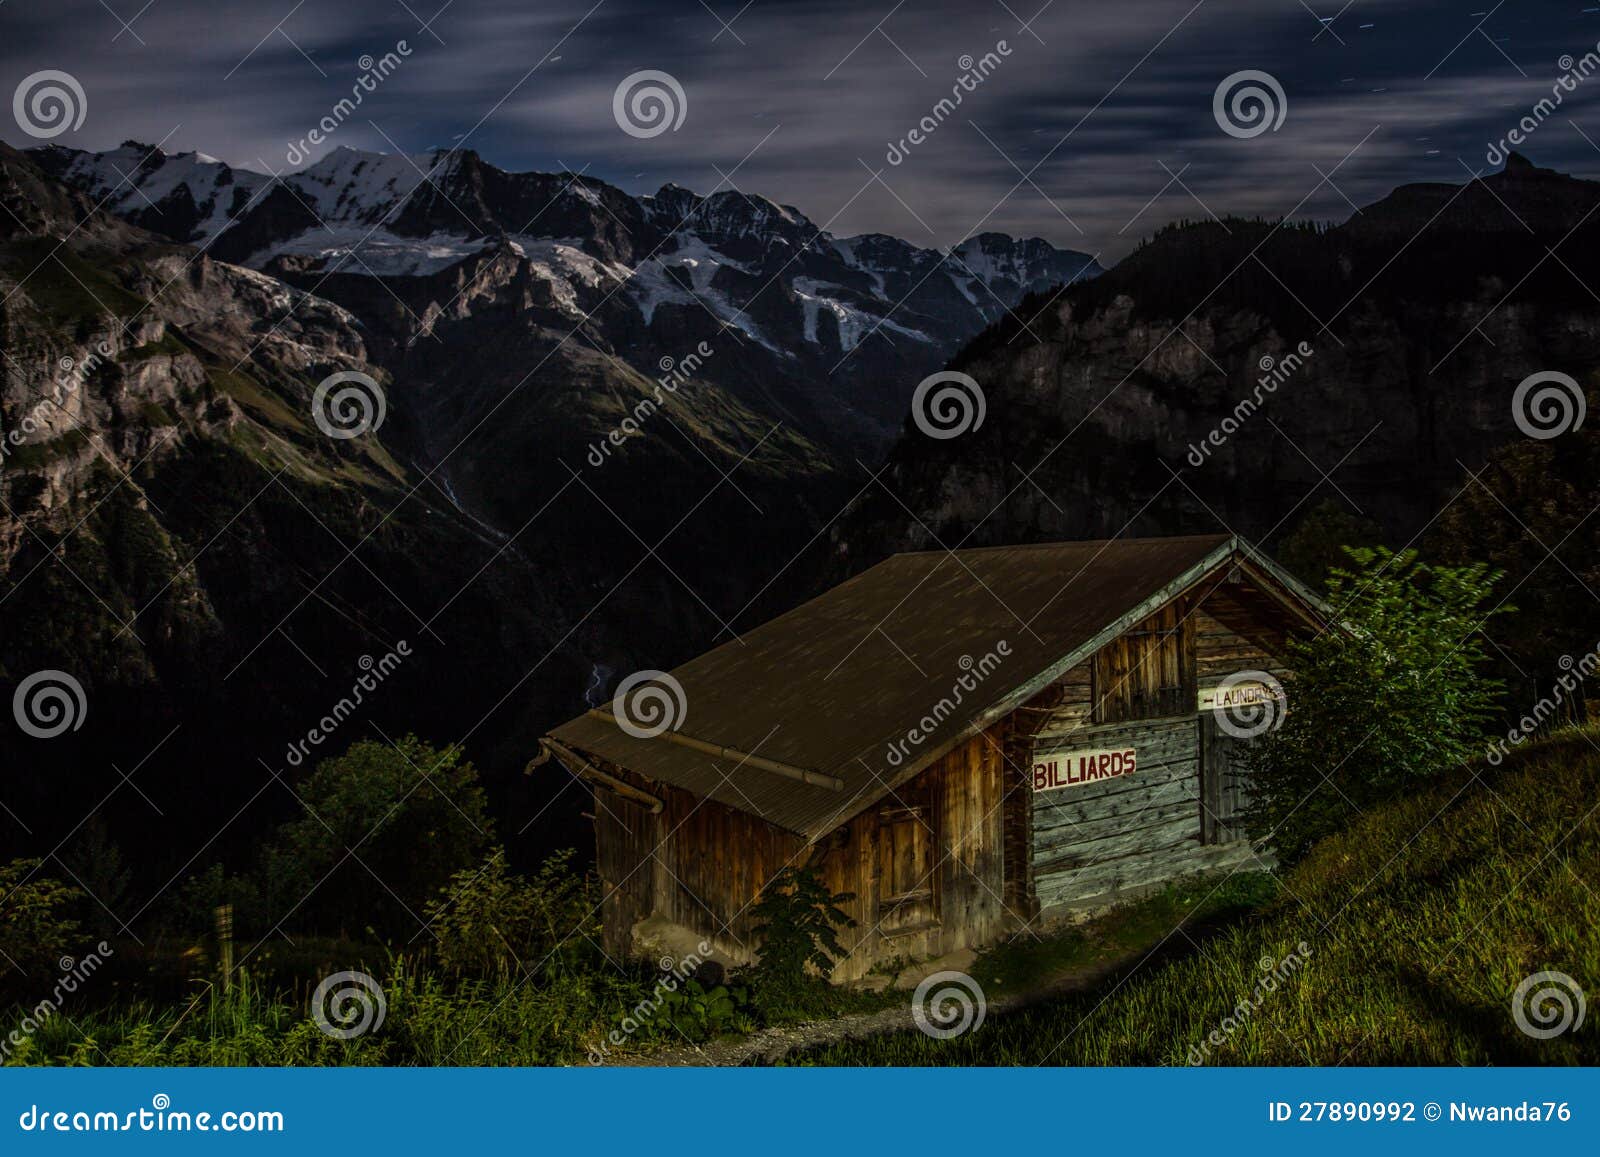 Choza en las montan@as suizas. Opinión de la noche de una choza de madera en el pueblo de montaña suizo de Gimmelwald, con el montaje Eiger en el fondo.